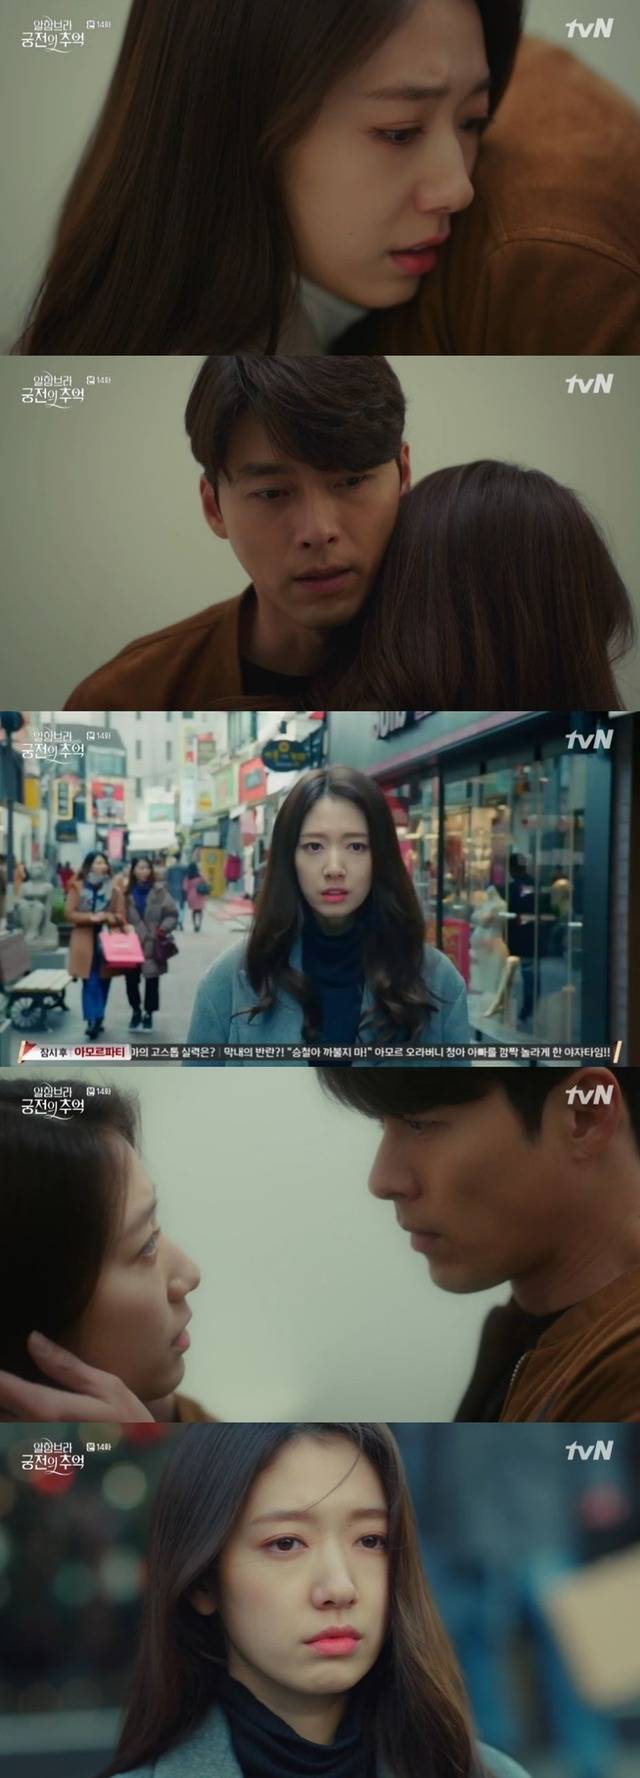 지난 13일 방송된 tvN 토일드라마 알함브라 궁전의 추억에서 배우 박신혜가 멜로퀸 다운 면모를 보였다. /tvN 캡처